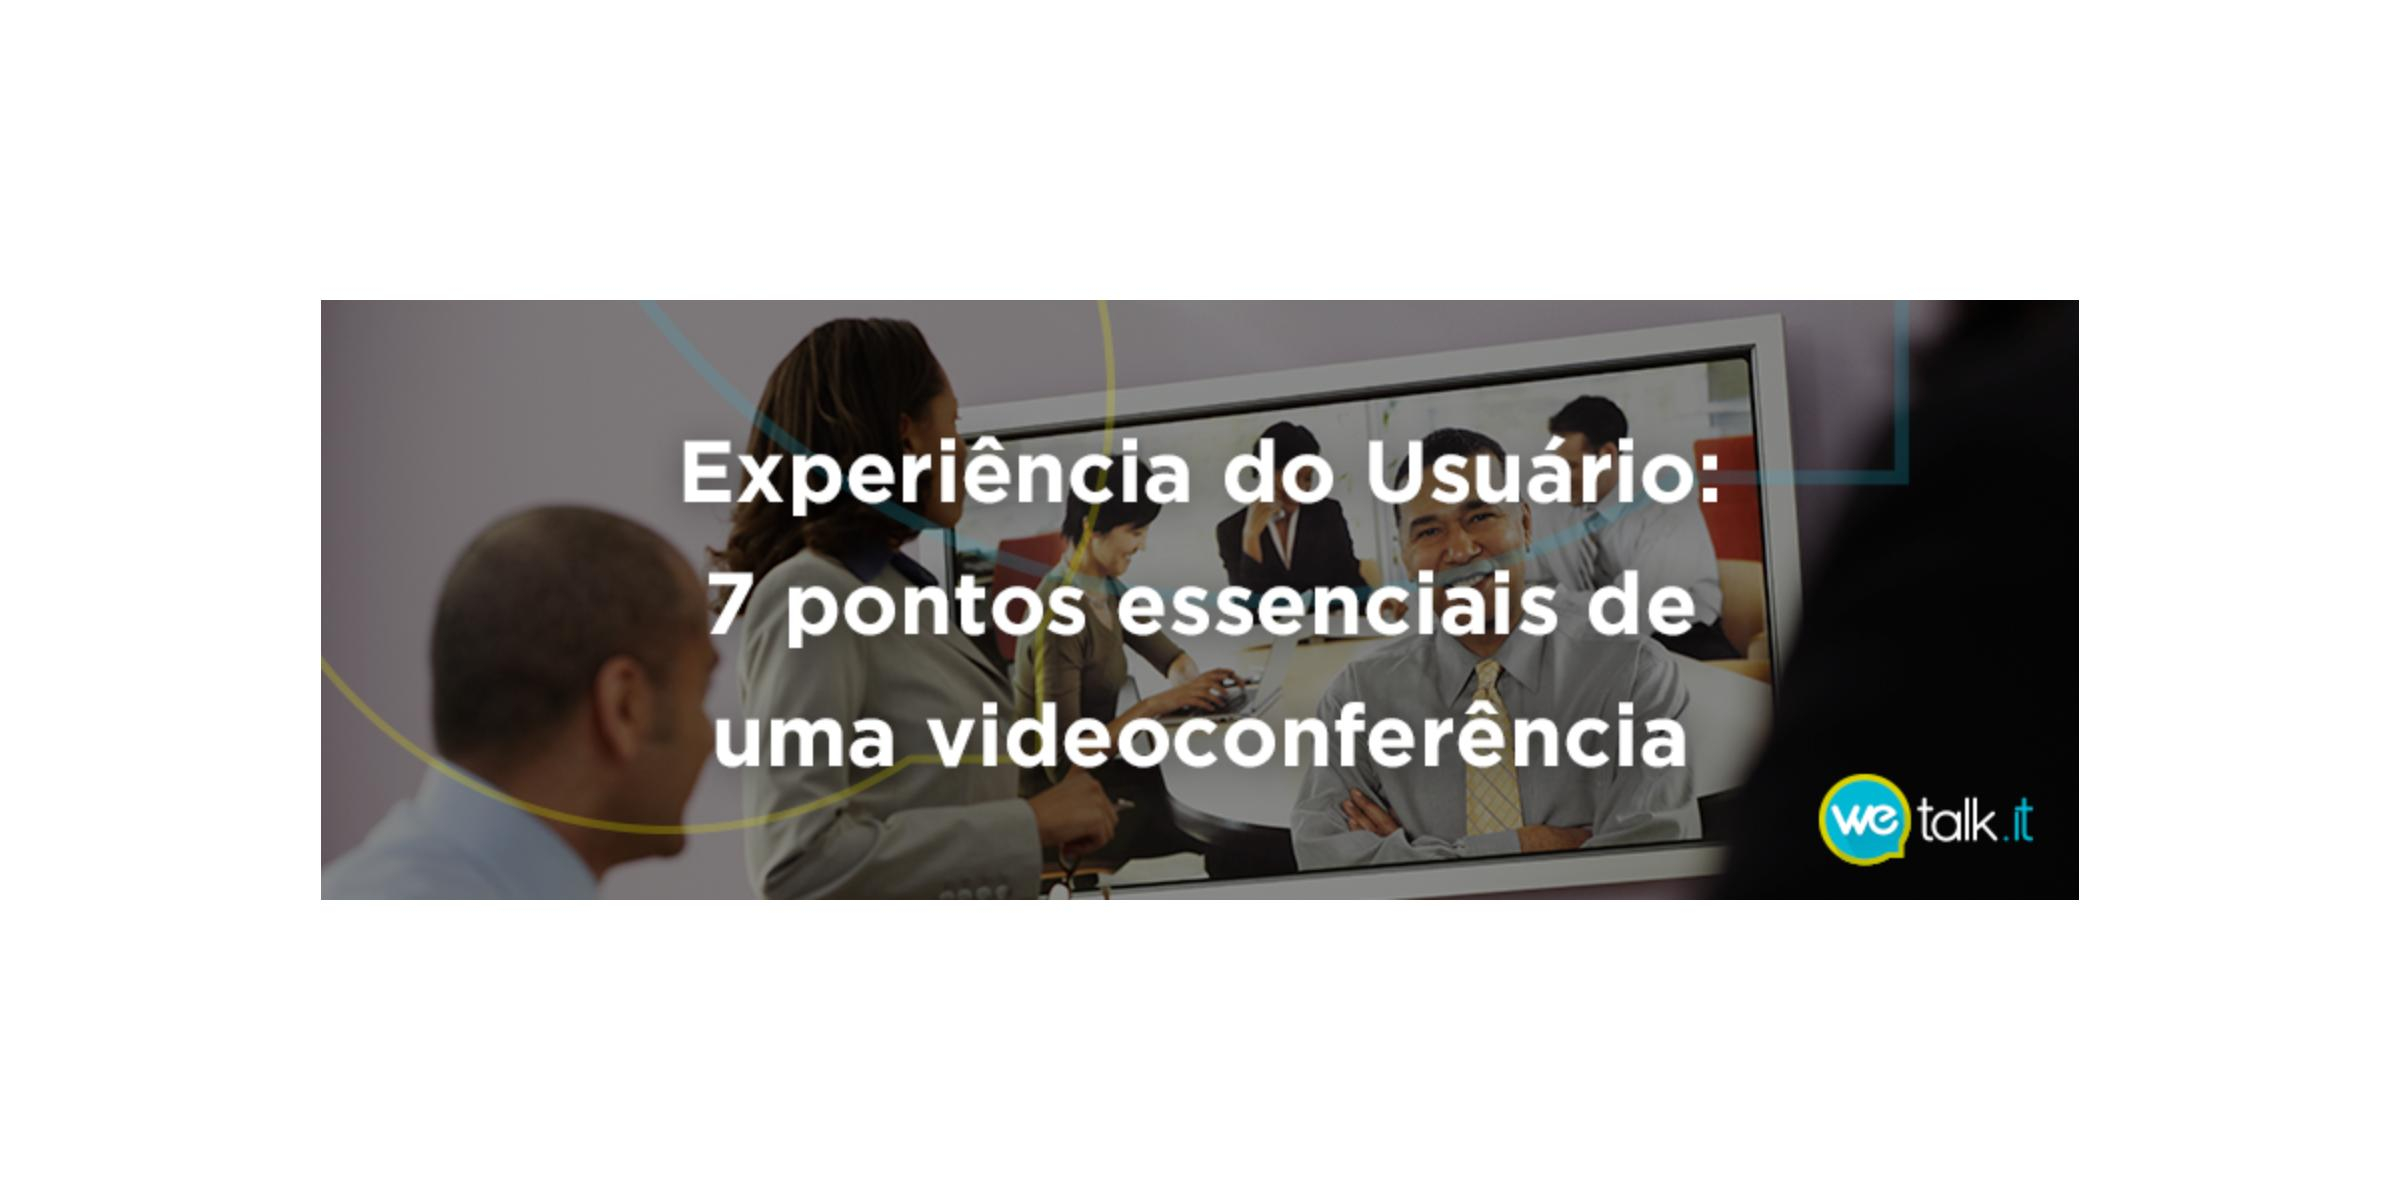 Experiência do Usuário: 7 pontos essenciais de uma videoconferência